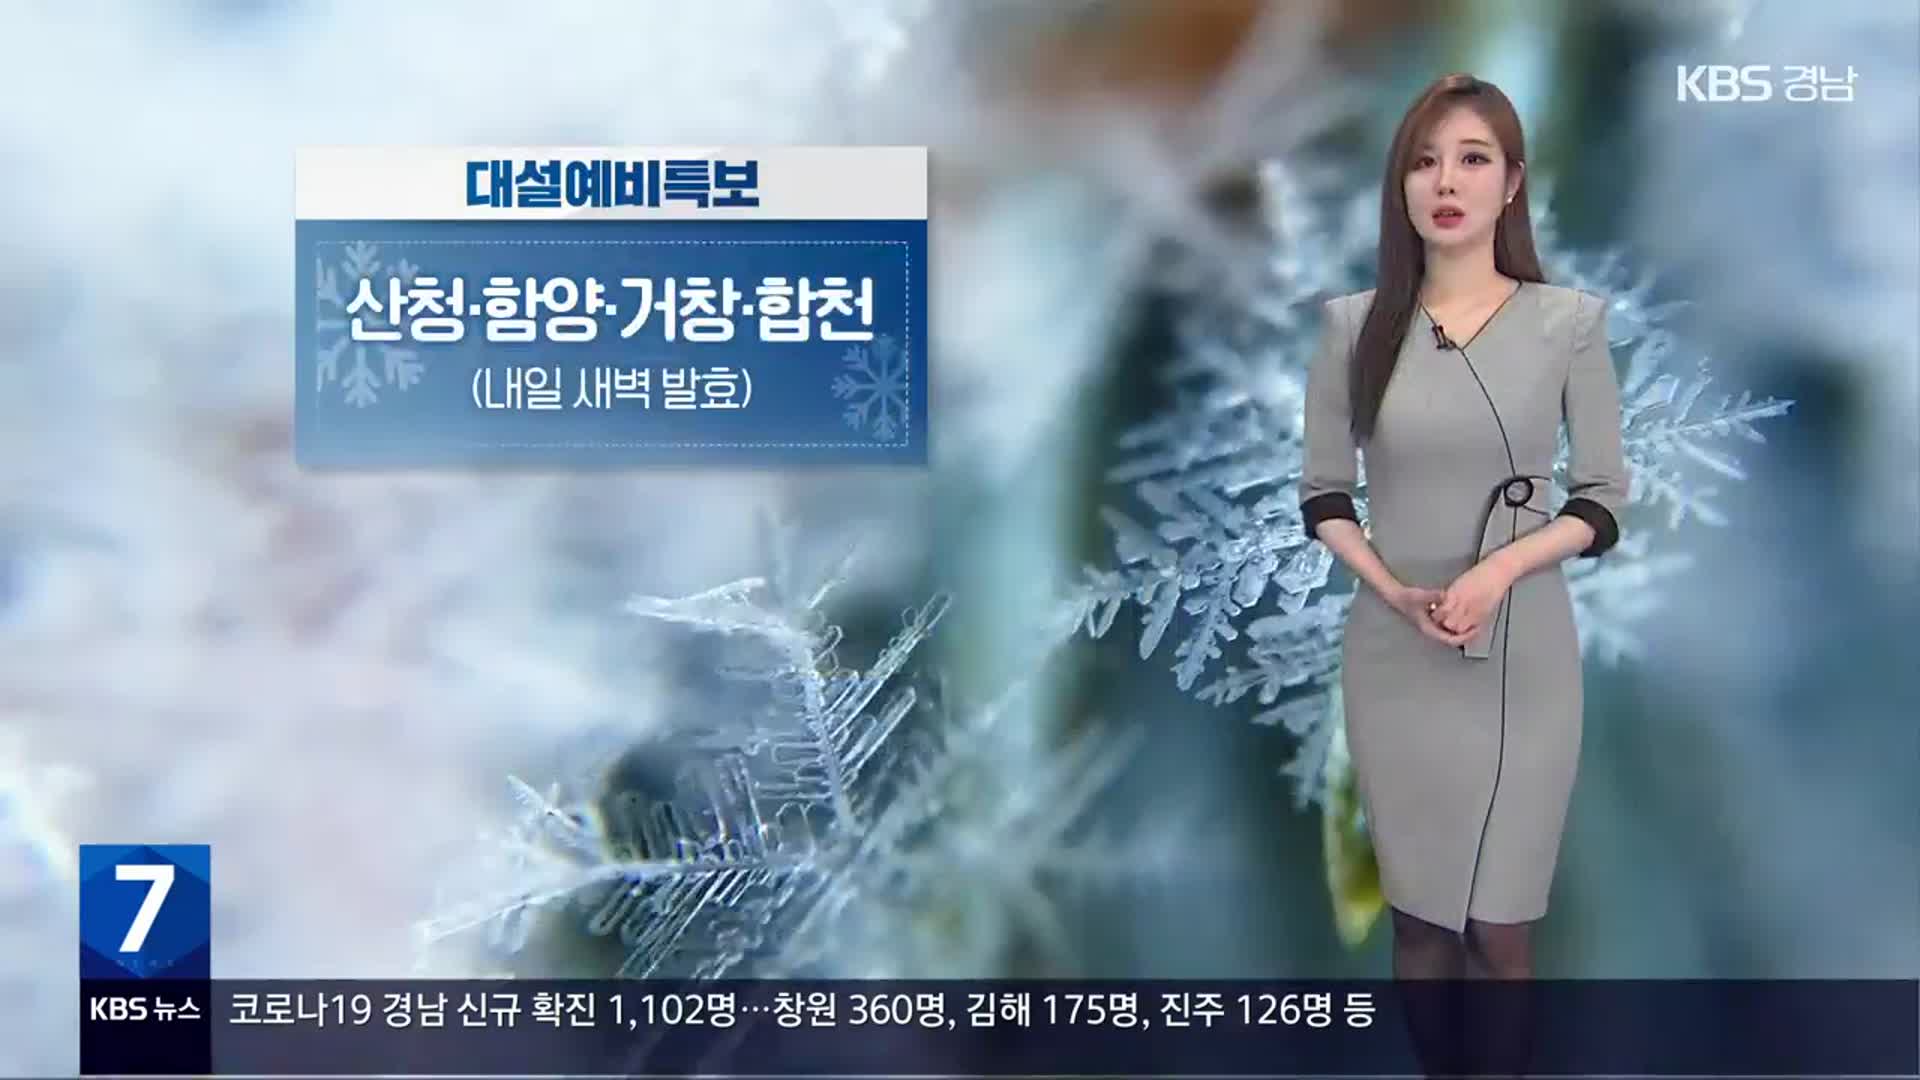 [날씨] 경남 서부내륙 대설 예비특보 발효…내일까지 많은 눈·비바람 주의